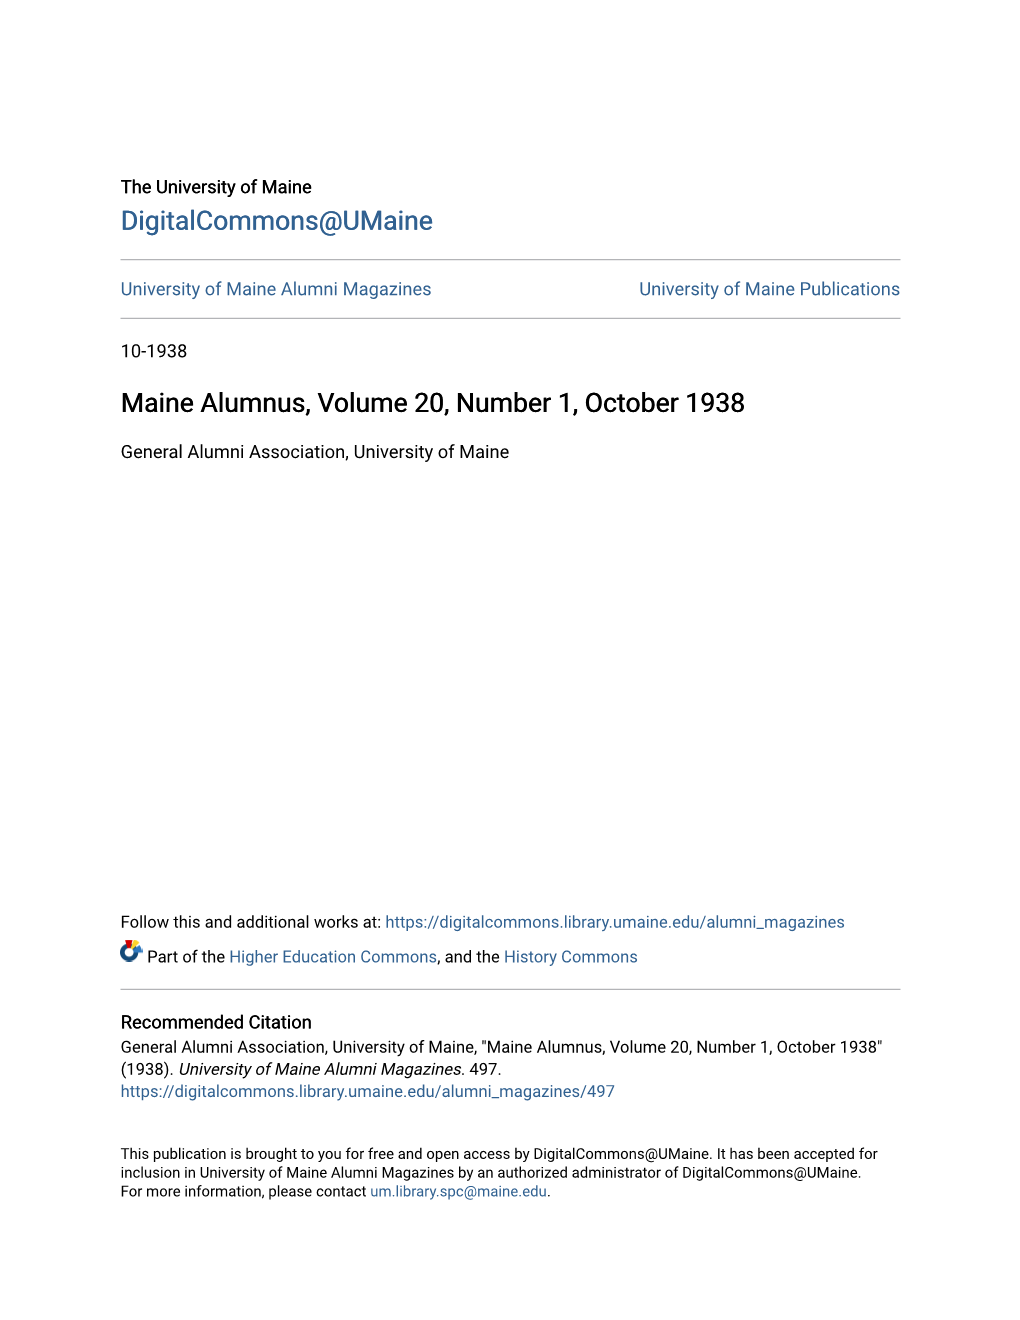 Maine Alumnus, Volume 20, Number 1, October 1938